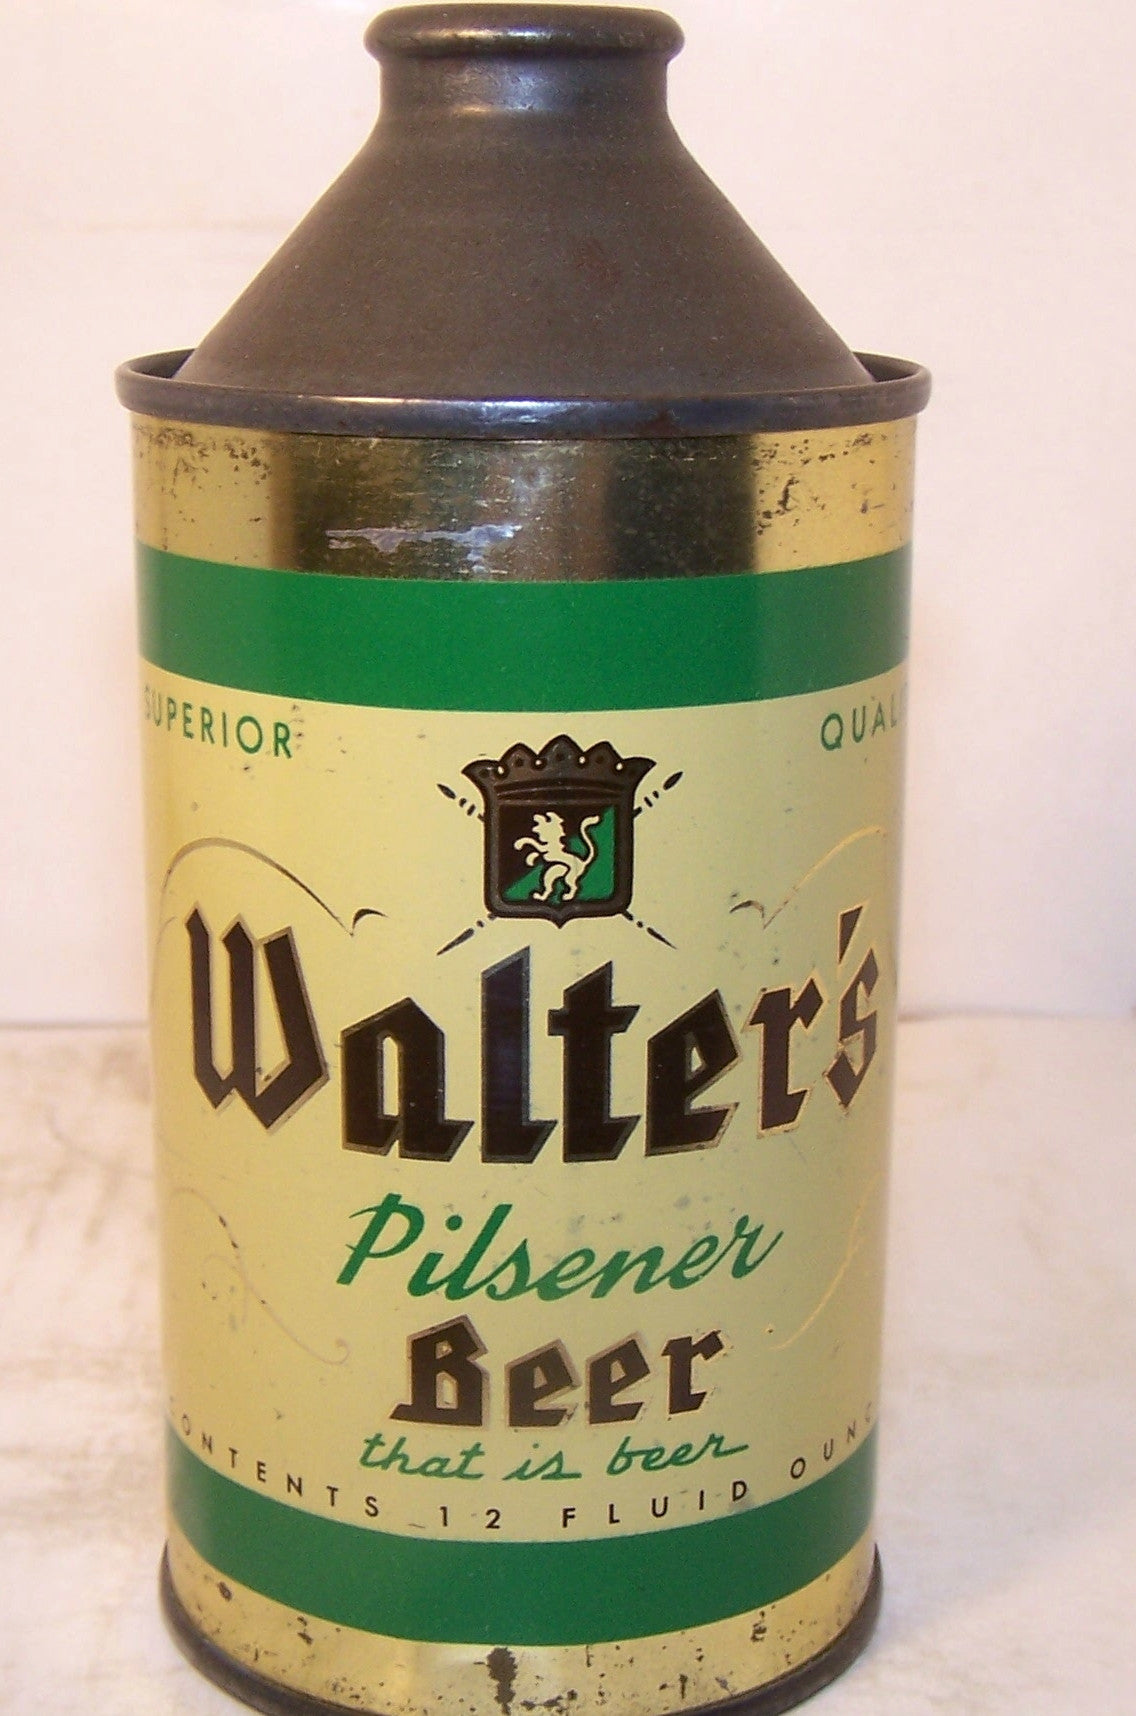 Walter's Pilsener Beer, USBC 188-24, Grade 1/1-  Sold on 02/15/19